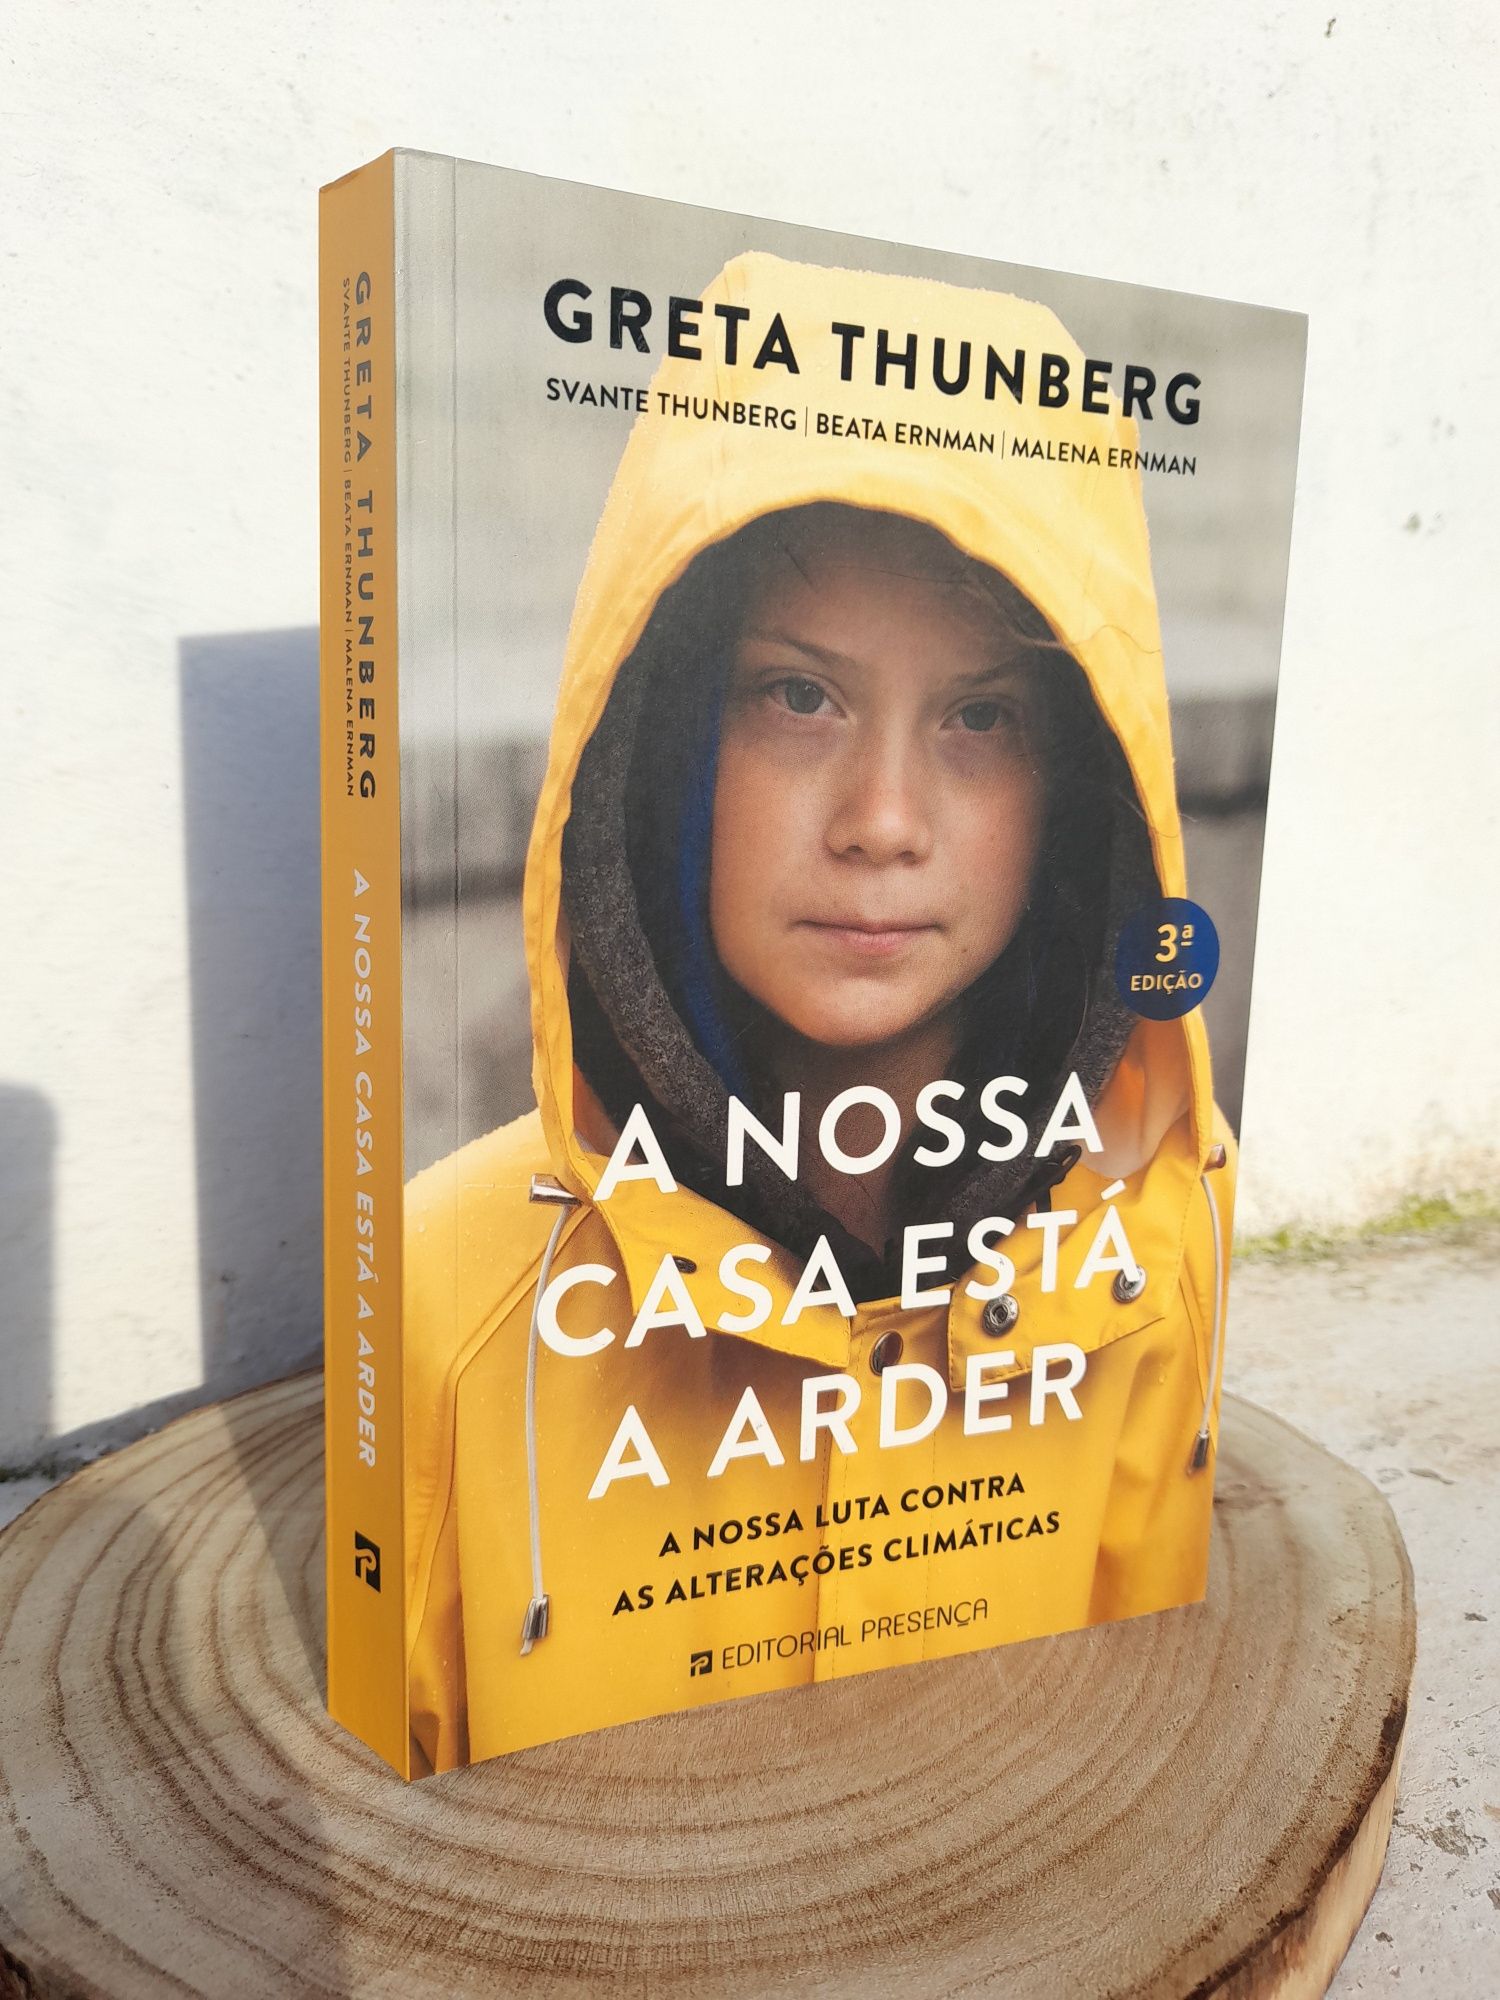 Livro "A nossa casa está a arder" de Greta Thunberg